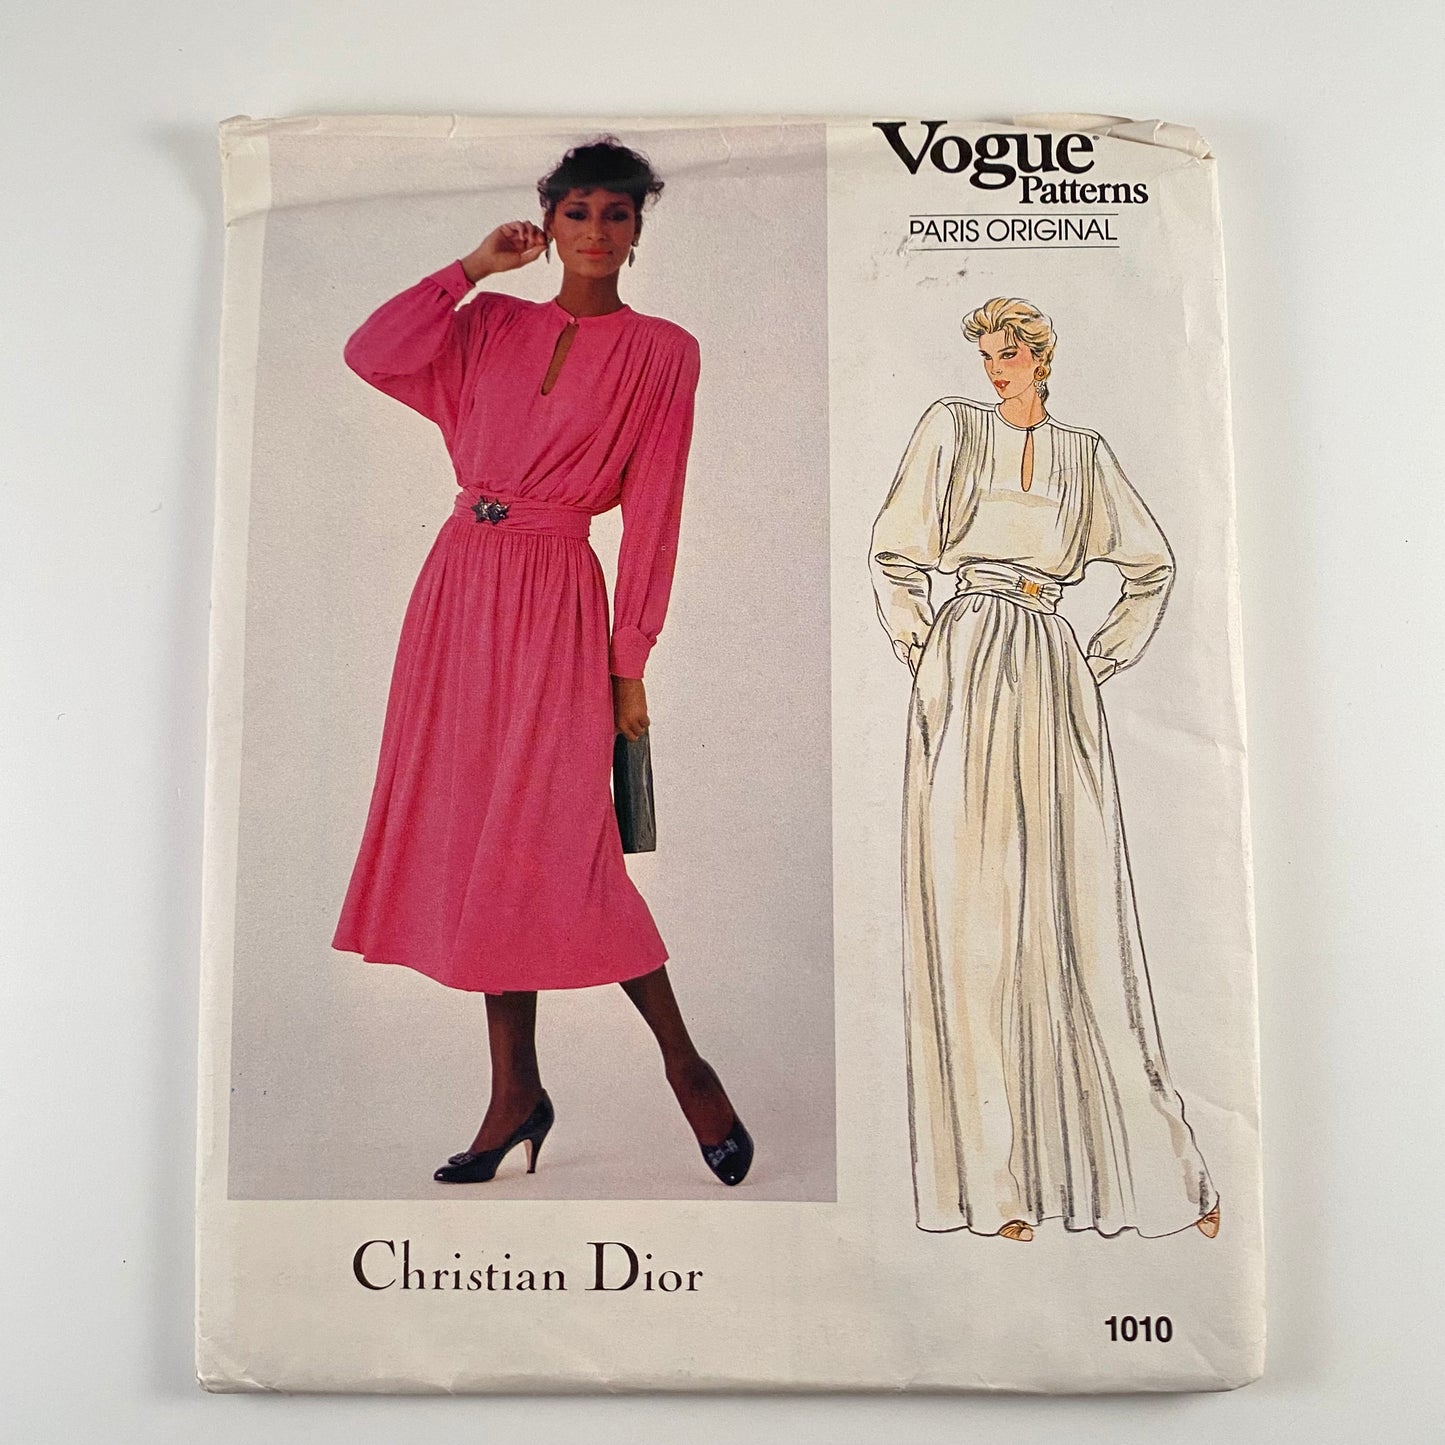 1980s Vogue Pattern 1010, Paris Original Christian Dior-Uncut